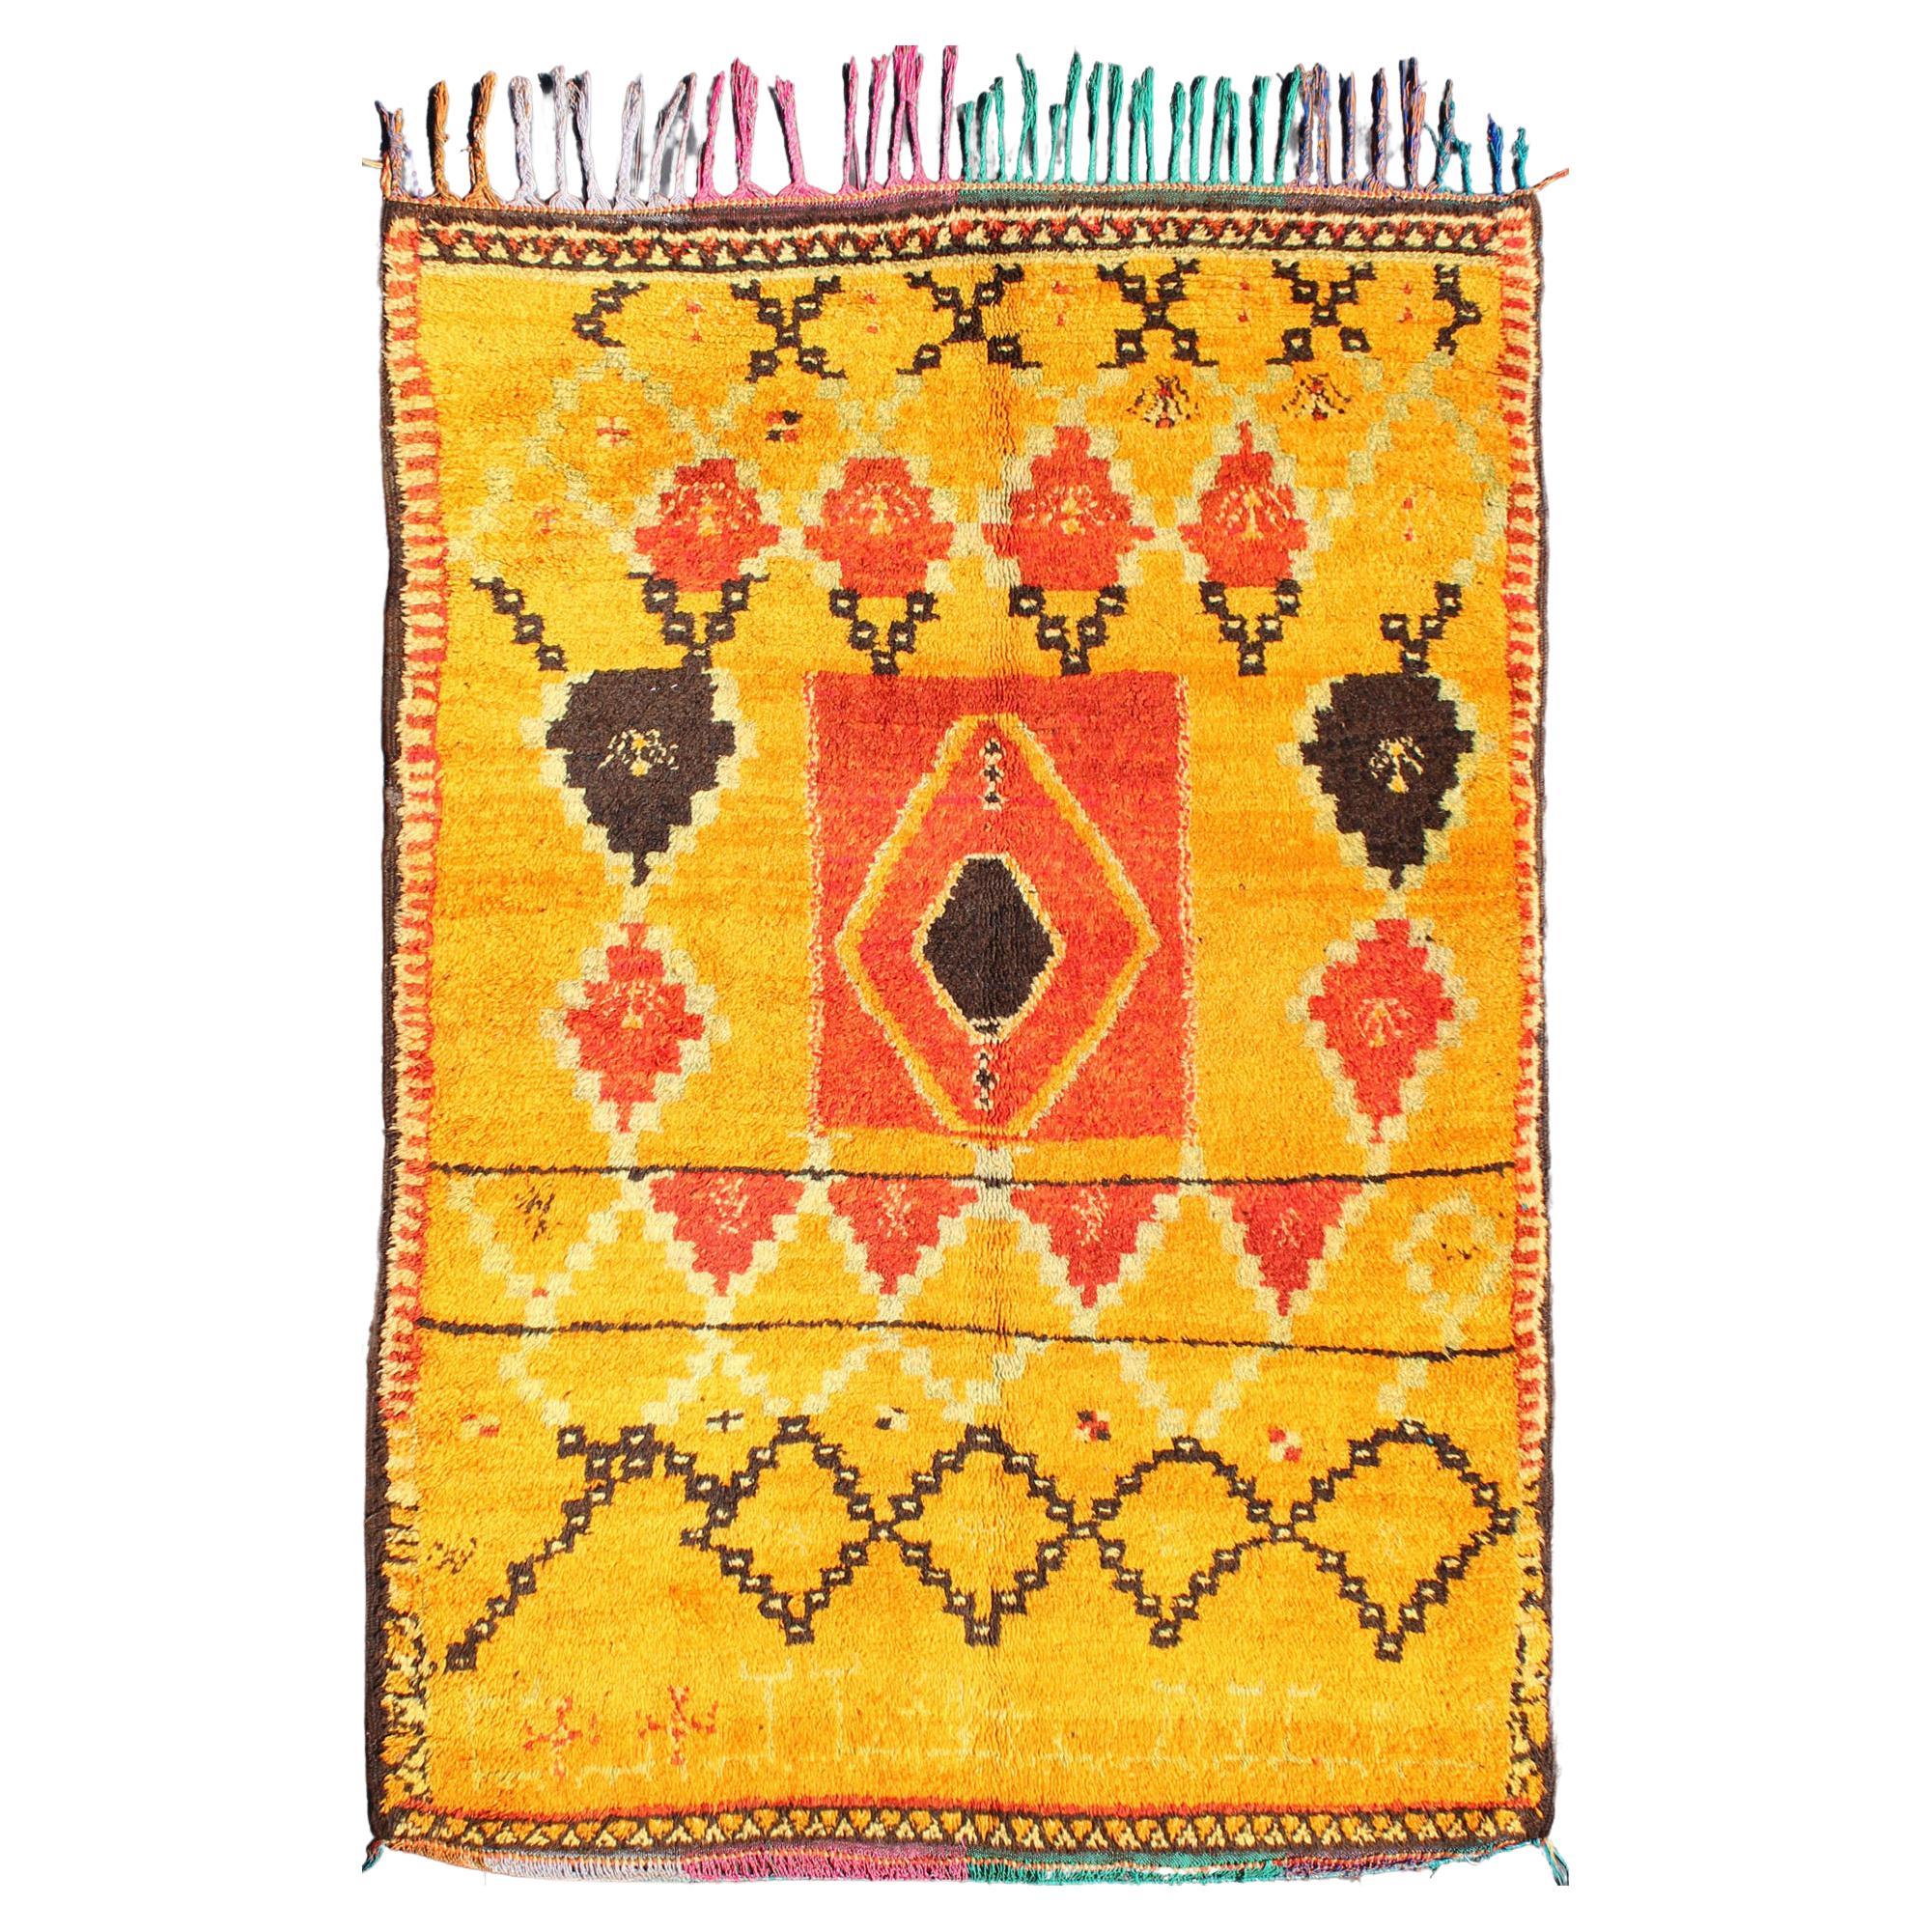 Saffron Colored Moroccan Carpet with Tribal Geometric Design 